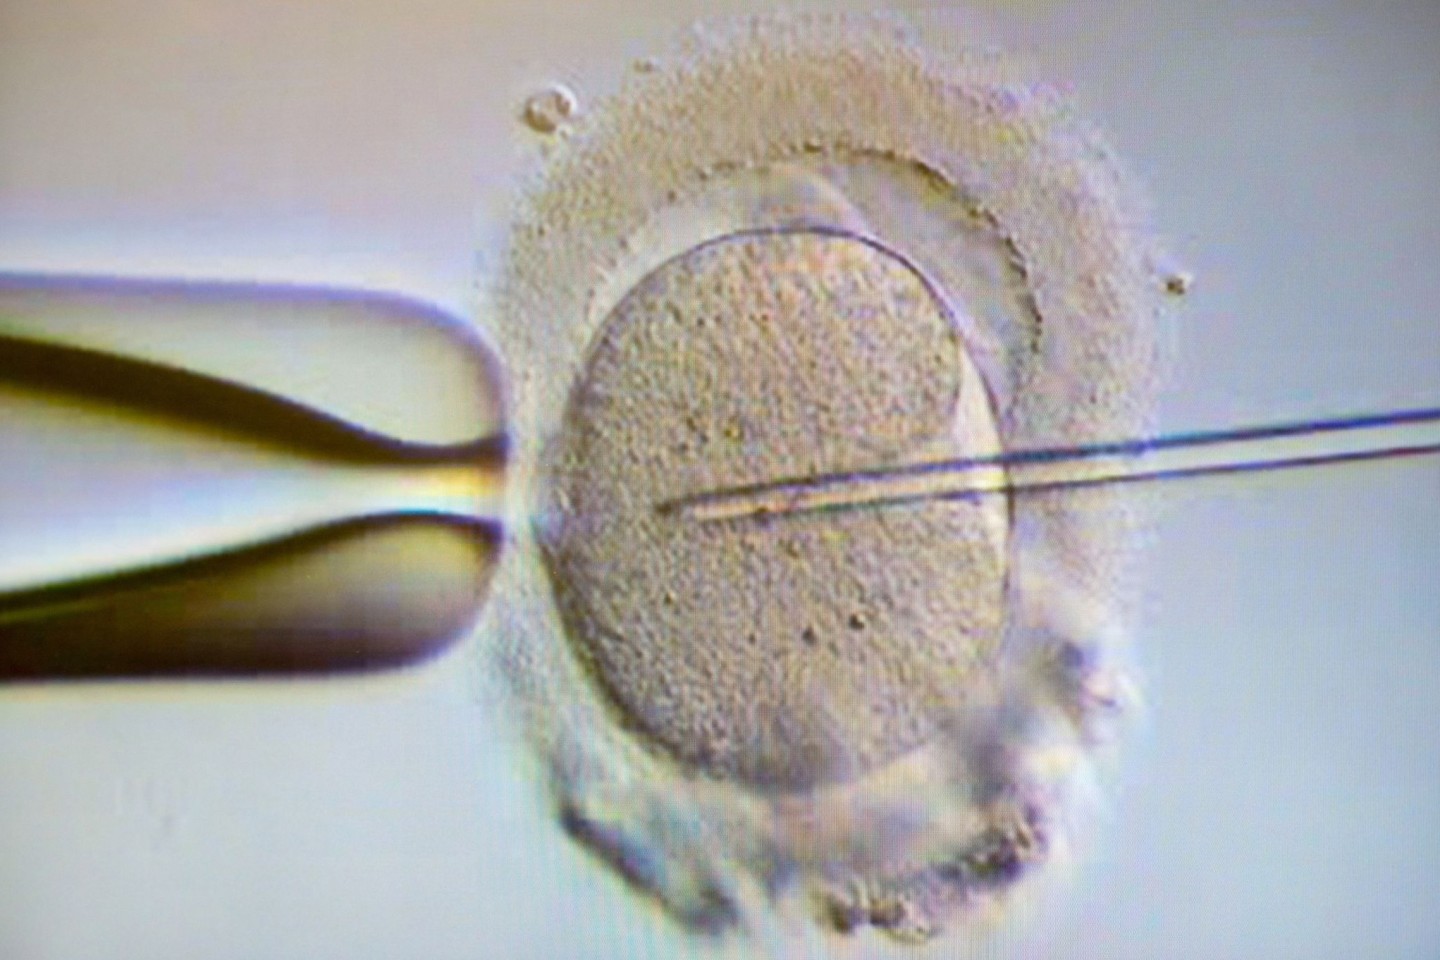 Ein Monitor zeigt eine Intrazytoplasmatische Spermieninjektion (Icsi). Bei der Behandlung wird einer Eizelle ein Spermium injiziert.